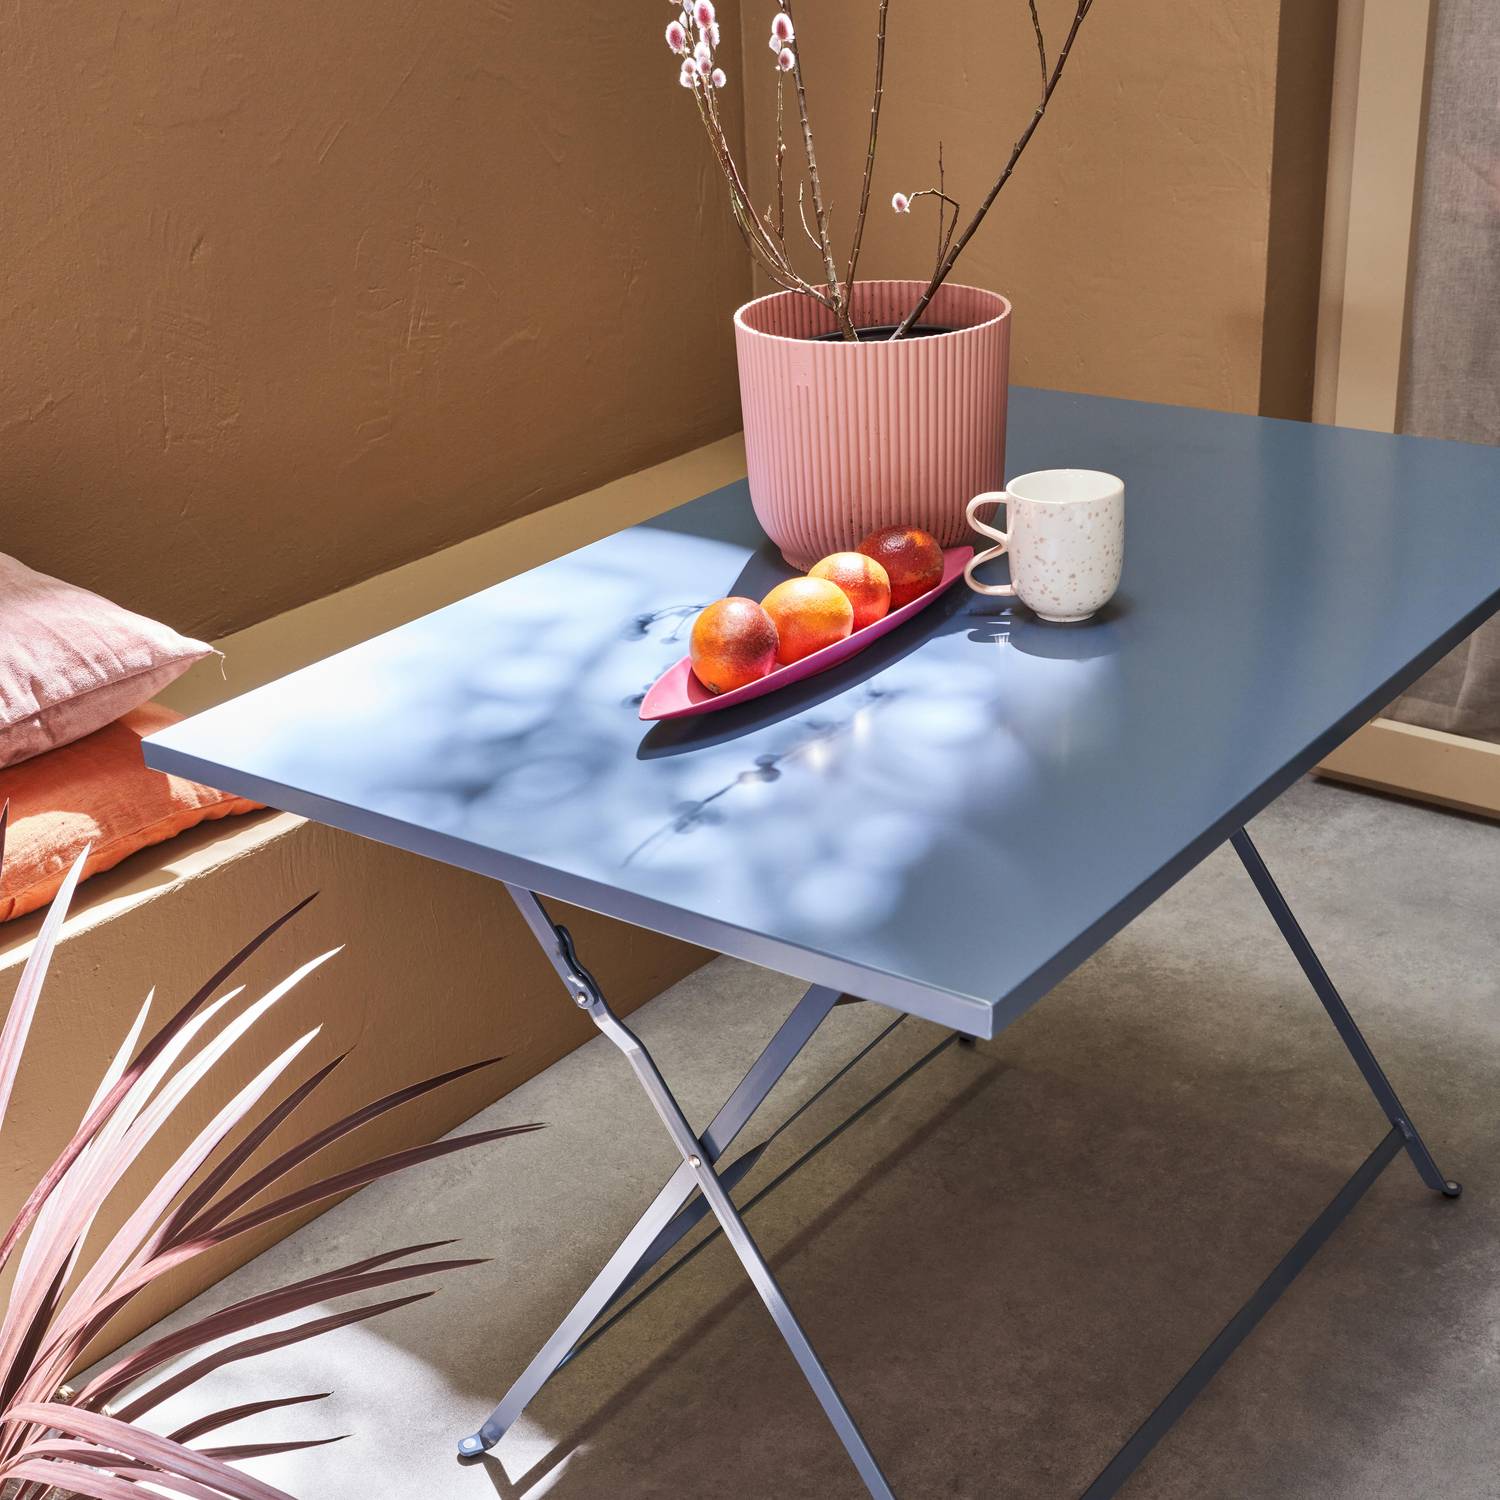 Emilia - Bistro tuintafel opvouwbaar - Rechthoekige tafel 110x70cm van staal met thermolak - Blauwgrijs Photo2